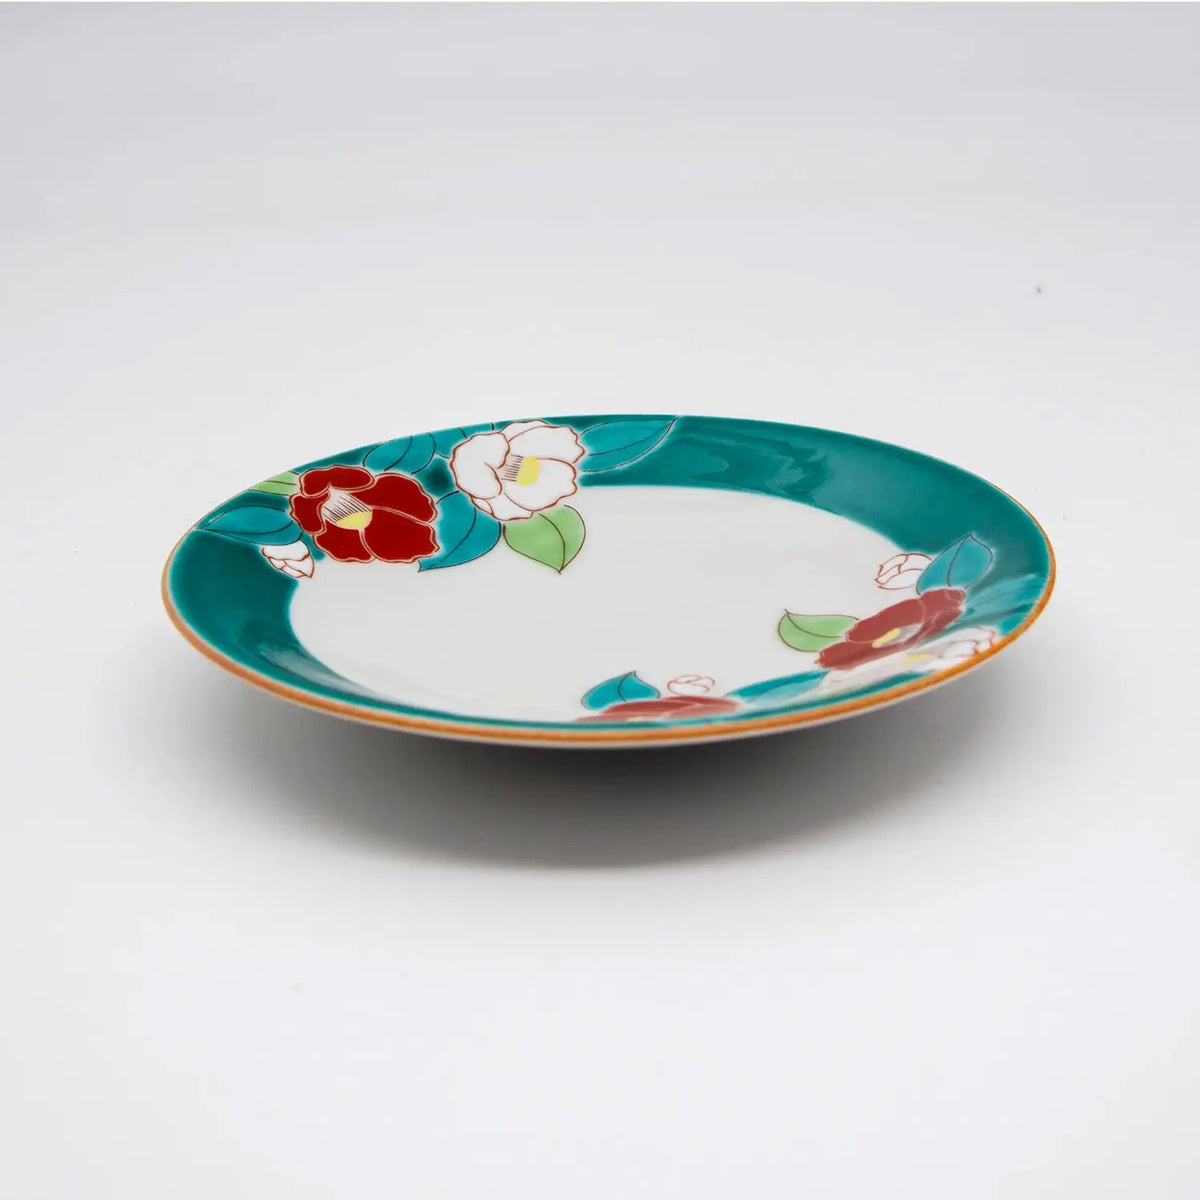 SEIKOU SHIKI-NO-HANA Kutani Porcelain Plate 13.8cm Camellia